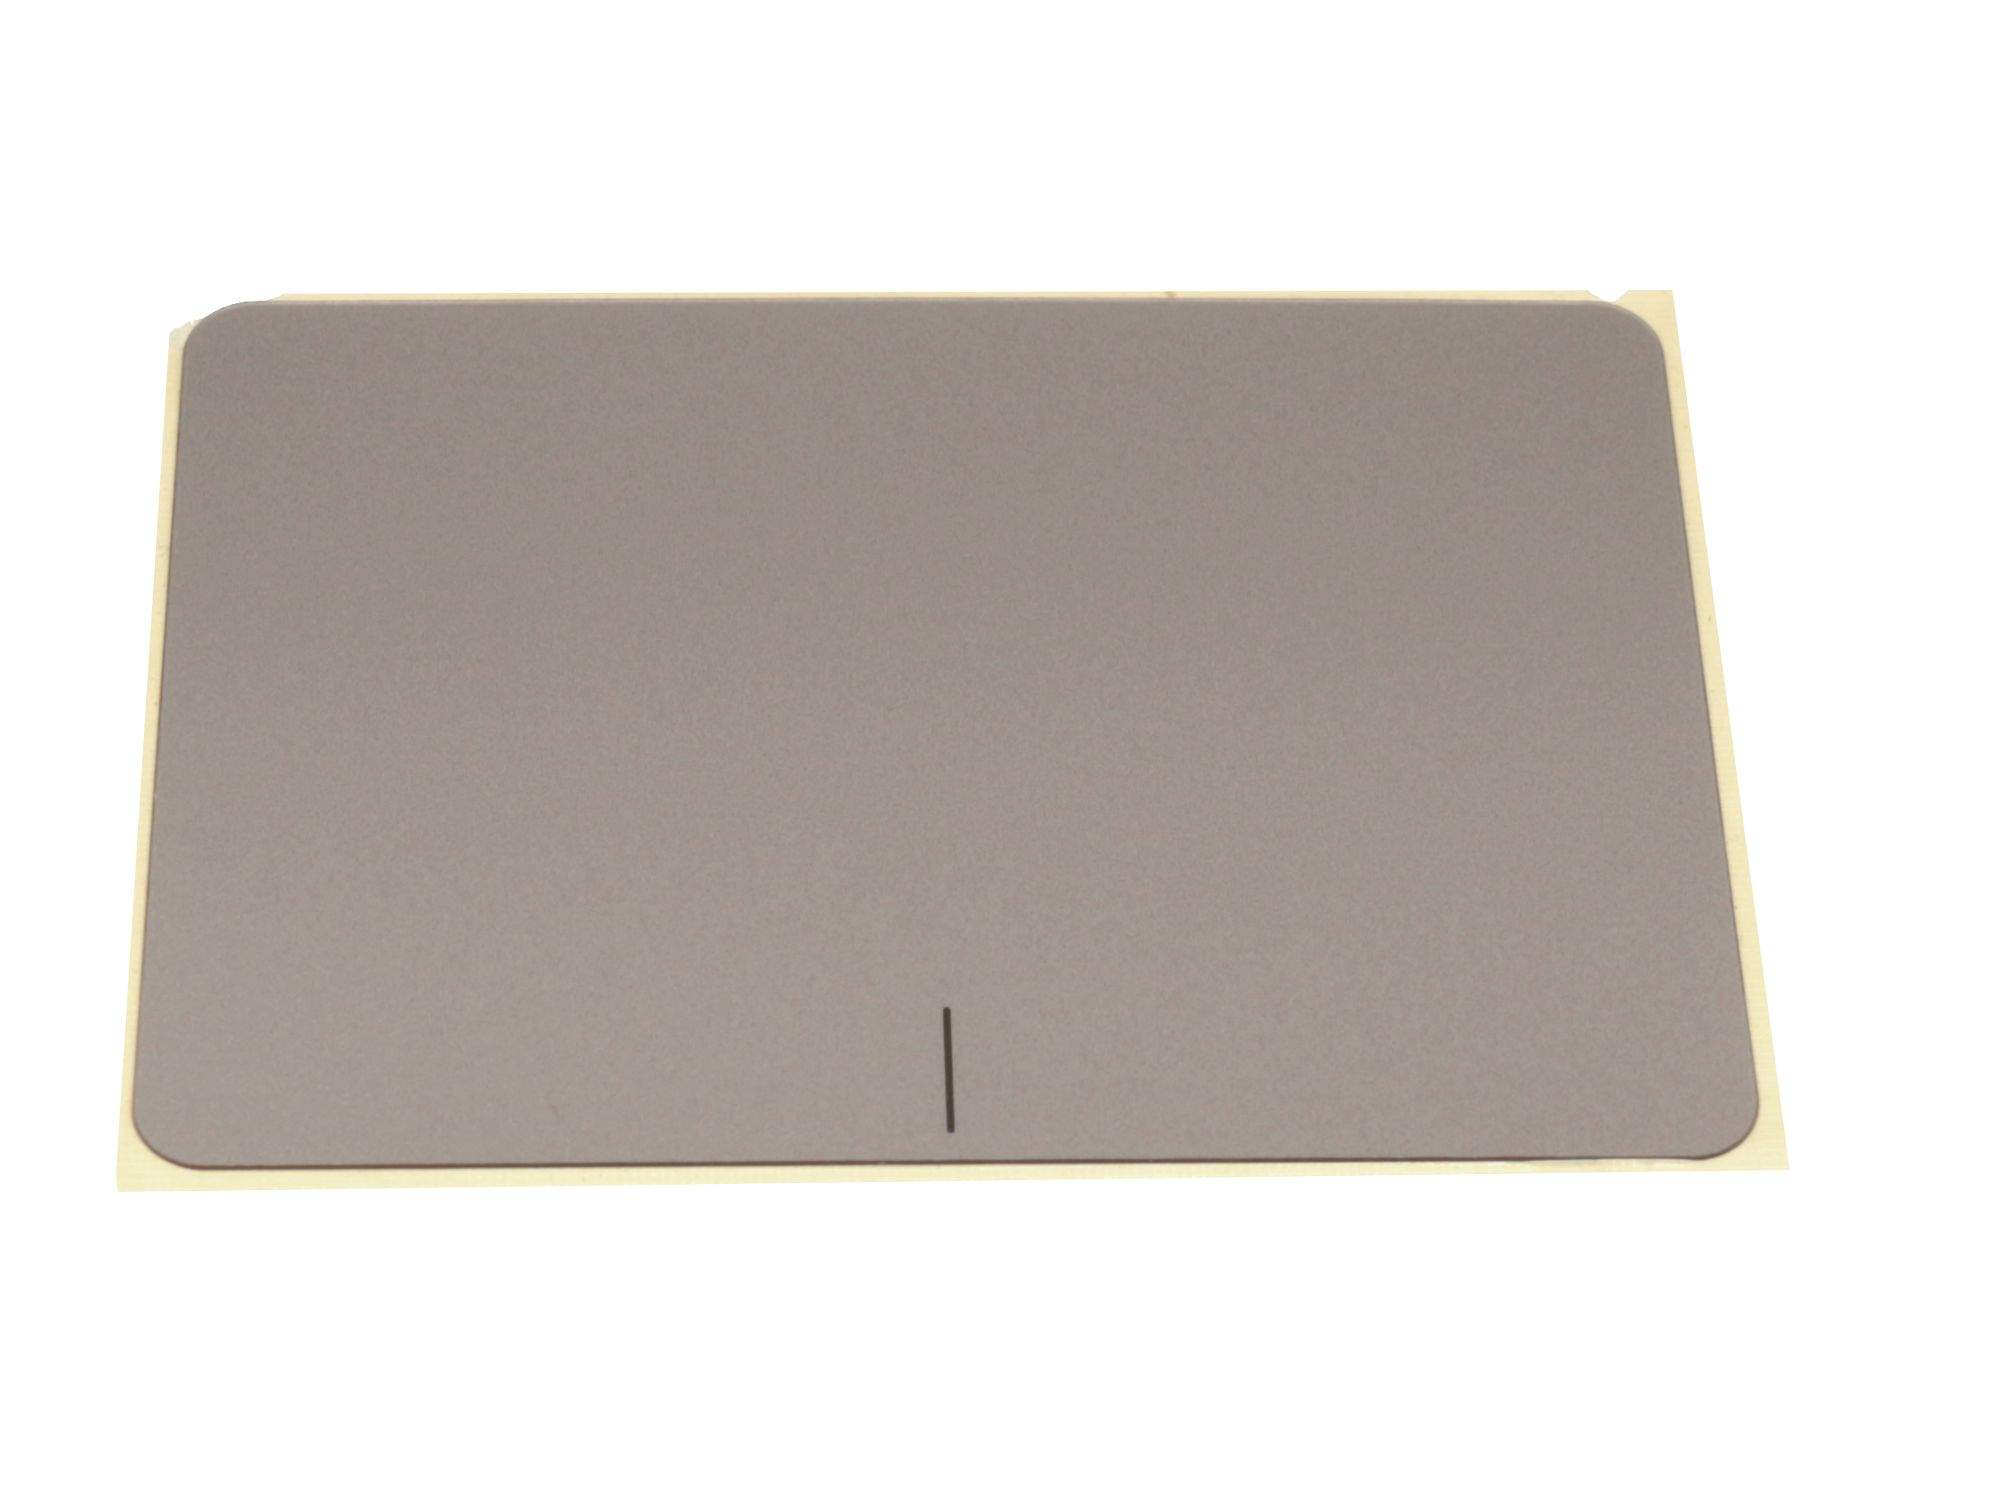 ASUS Touchpad Abdeckung braun Original für Asus F556UV Serie